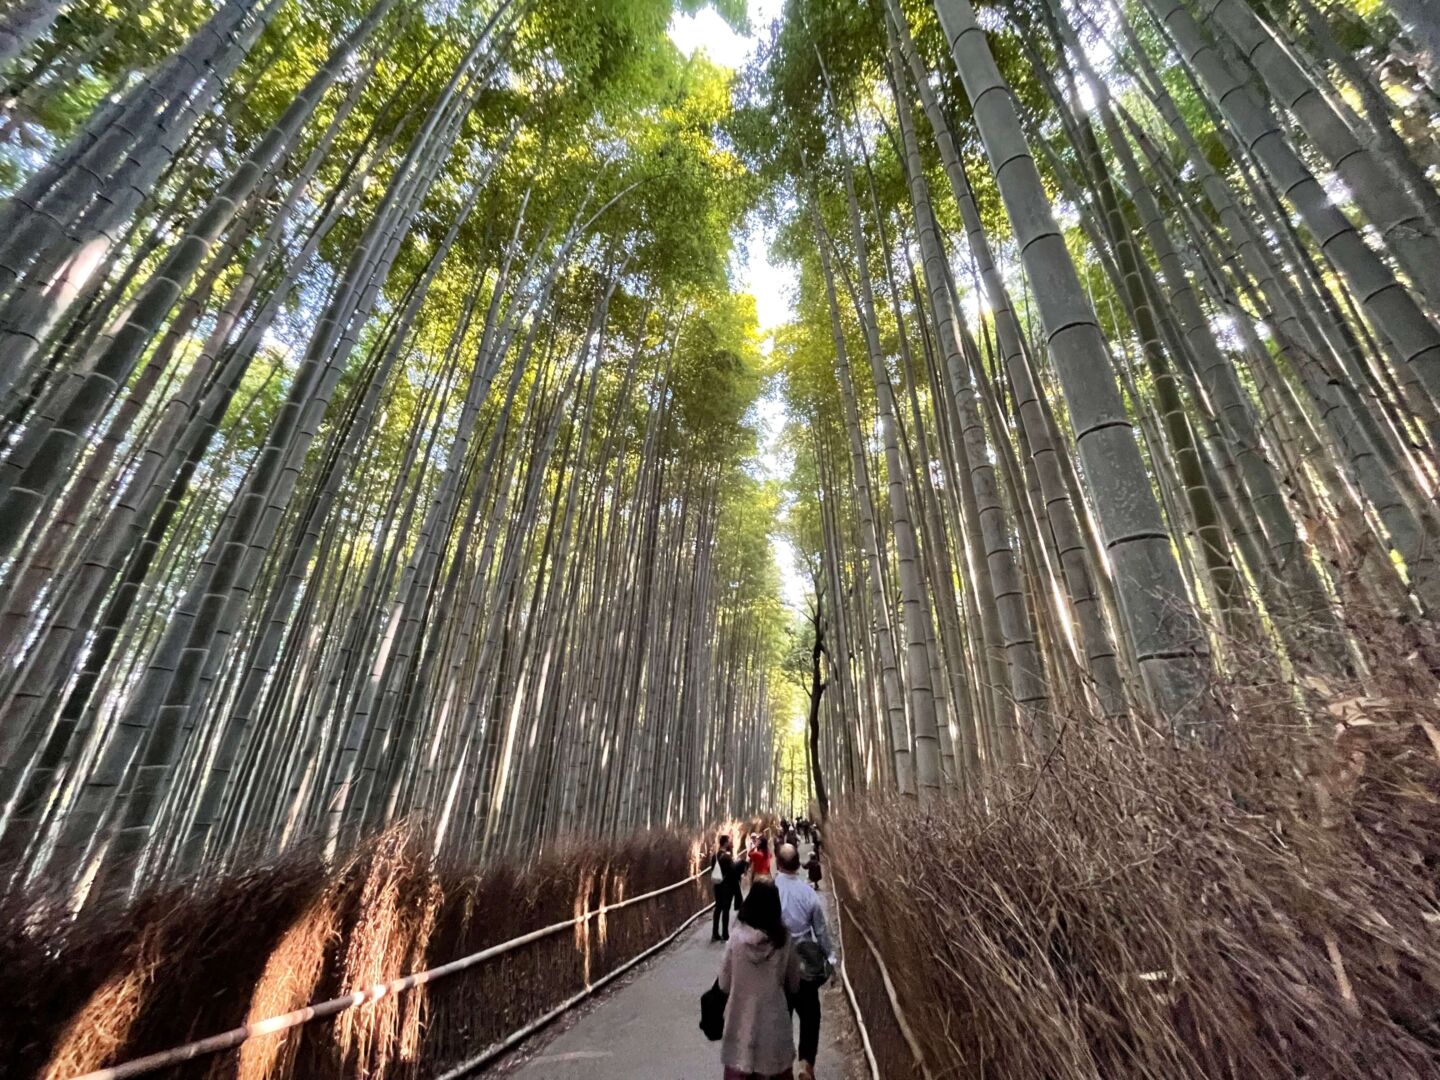 Um caminho no centro da foto no meio de um corredor muito alto de bambus. A iluminação entra pelo meio.